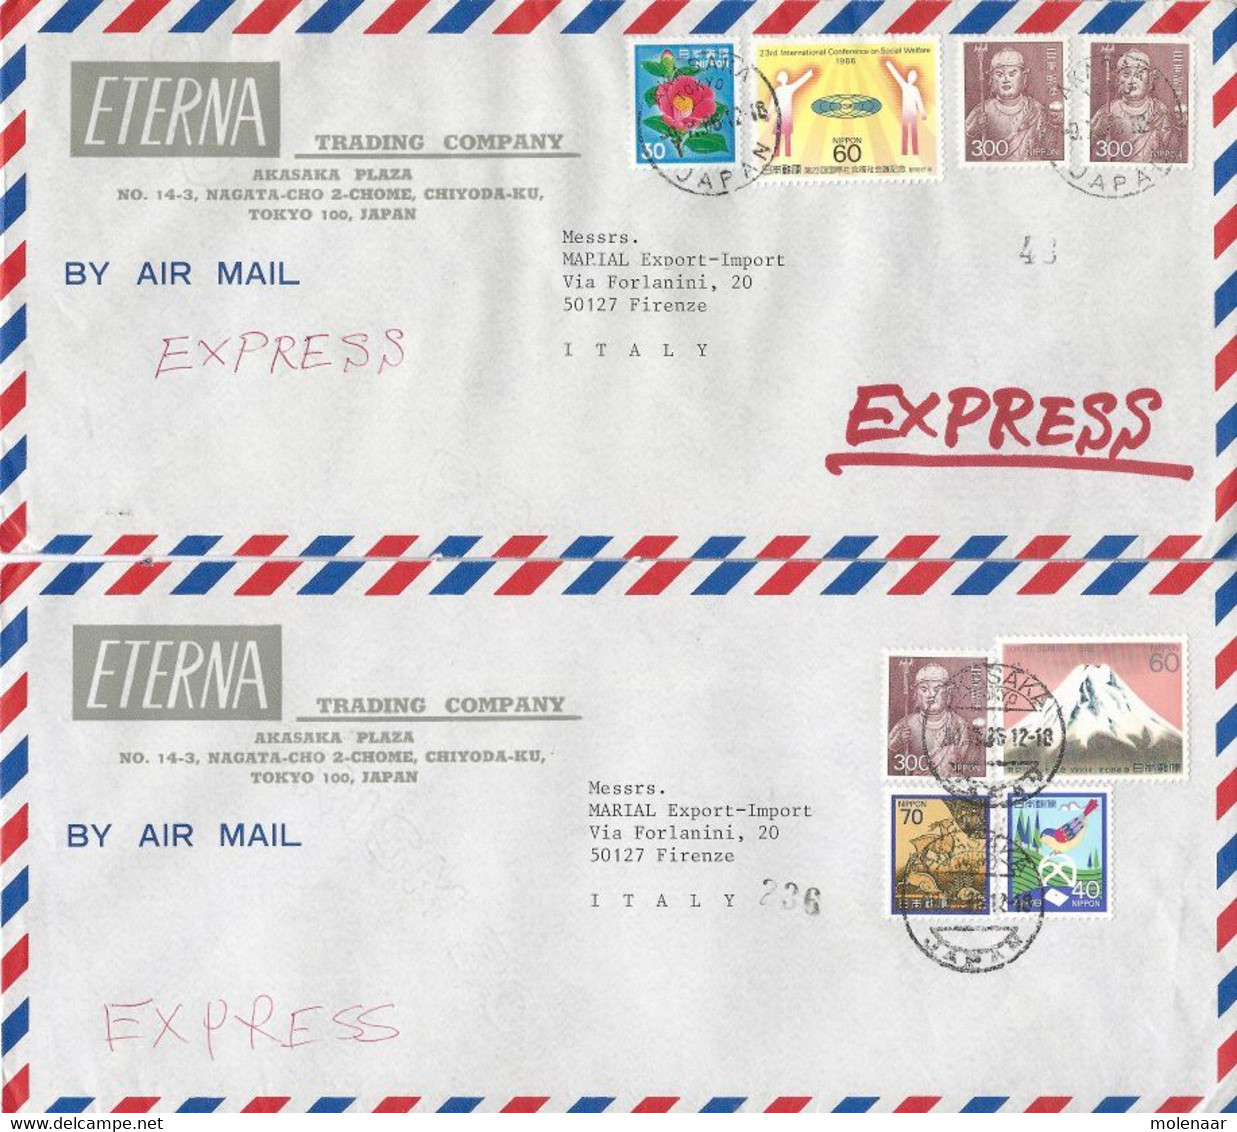 Japan 22 luchtpost en aangetekende brieven (1009)